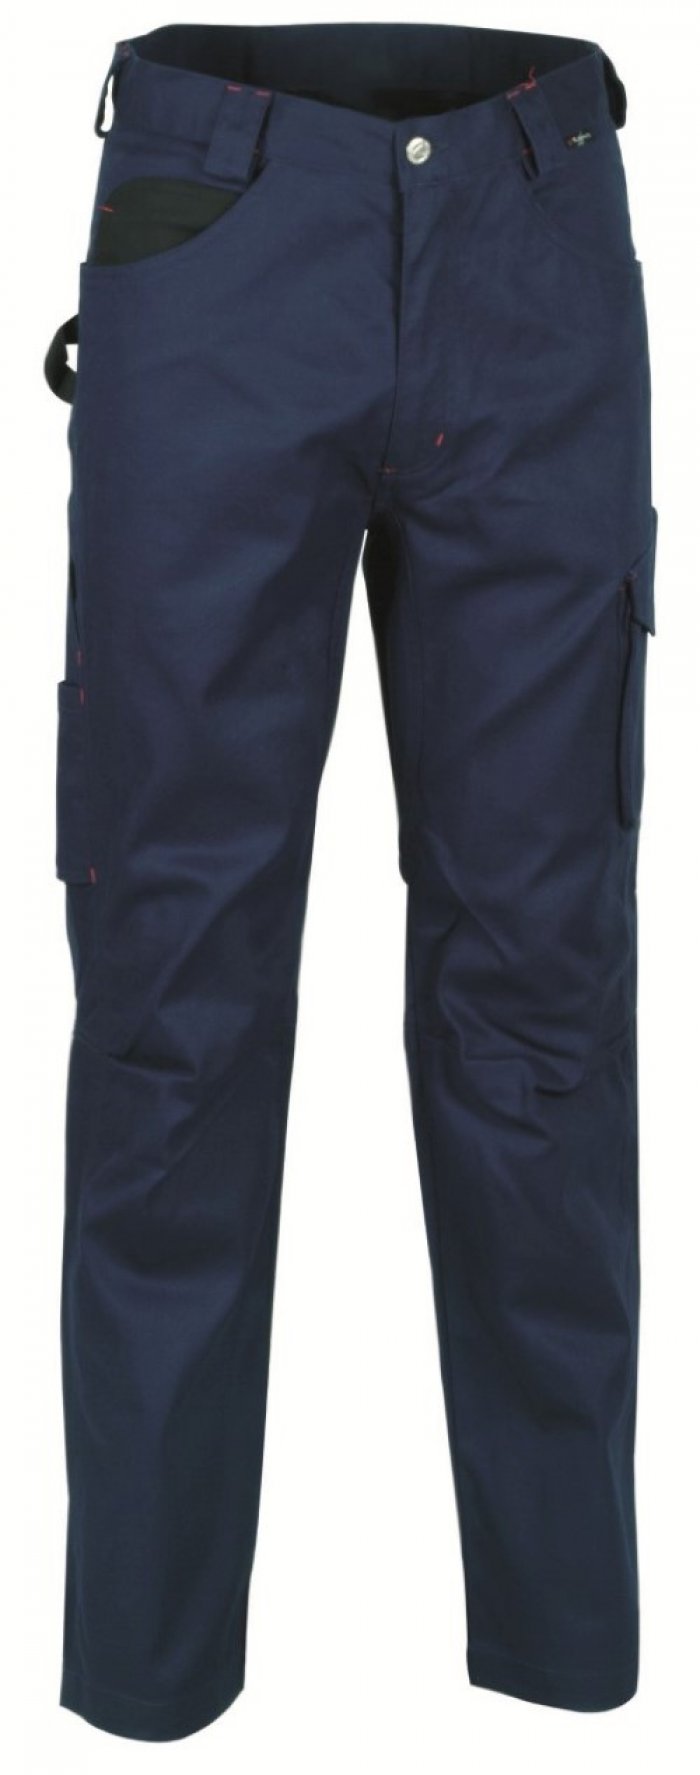 Pantalone drill colore navy tg.60